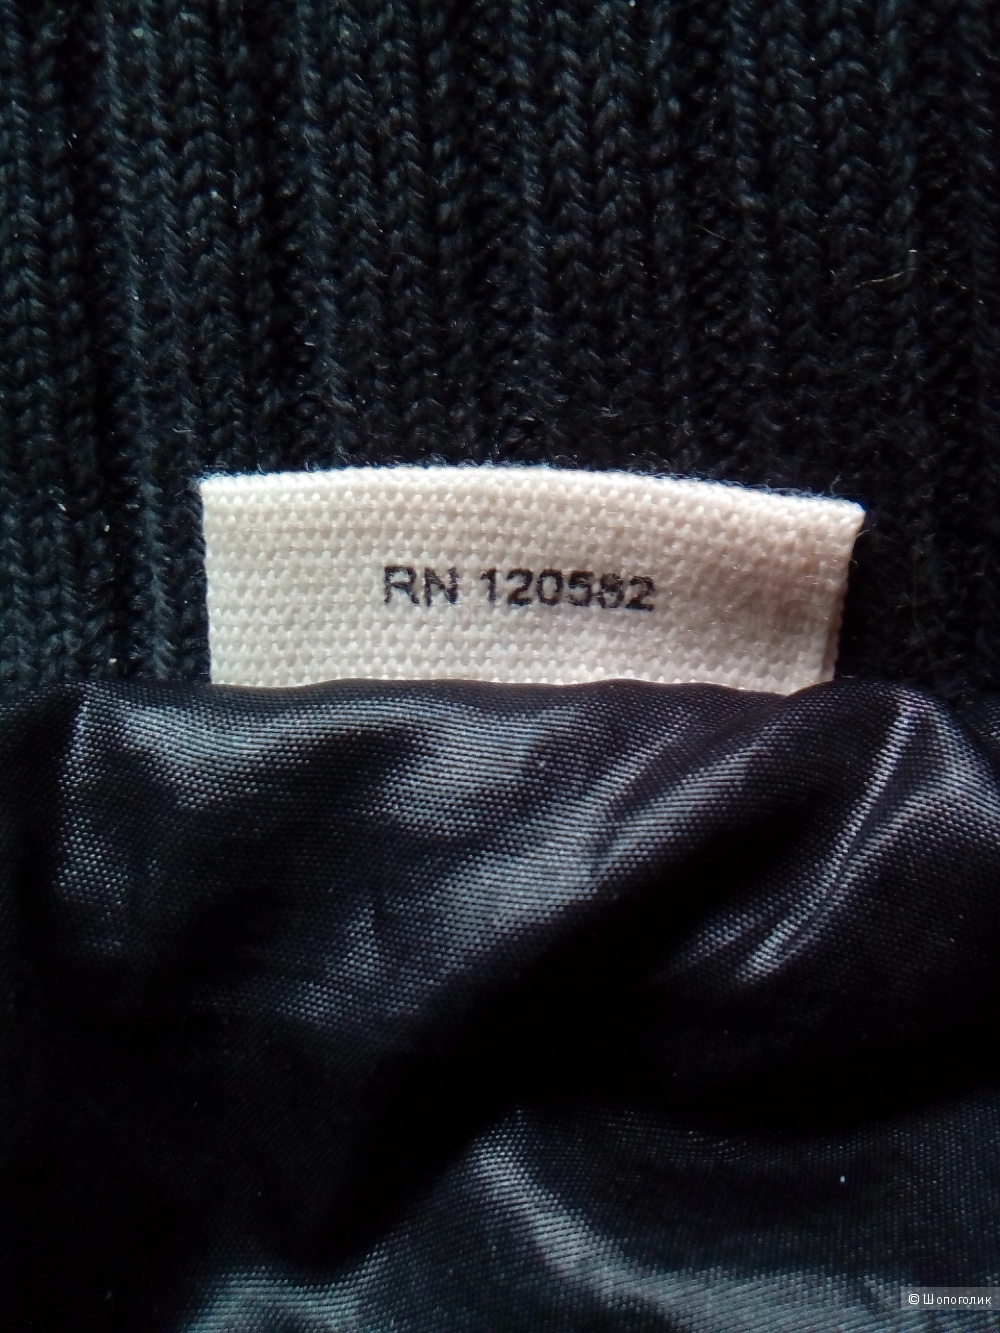 Куртка DKNY Jeans  46 размера. Черная